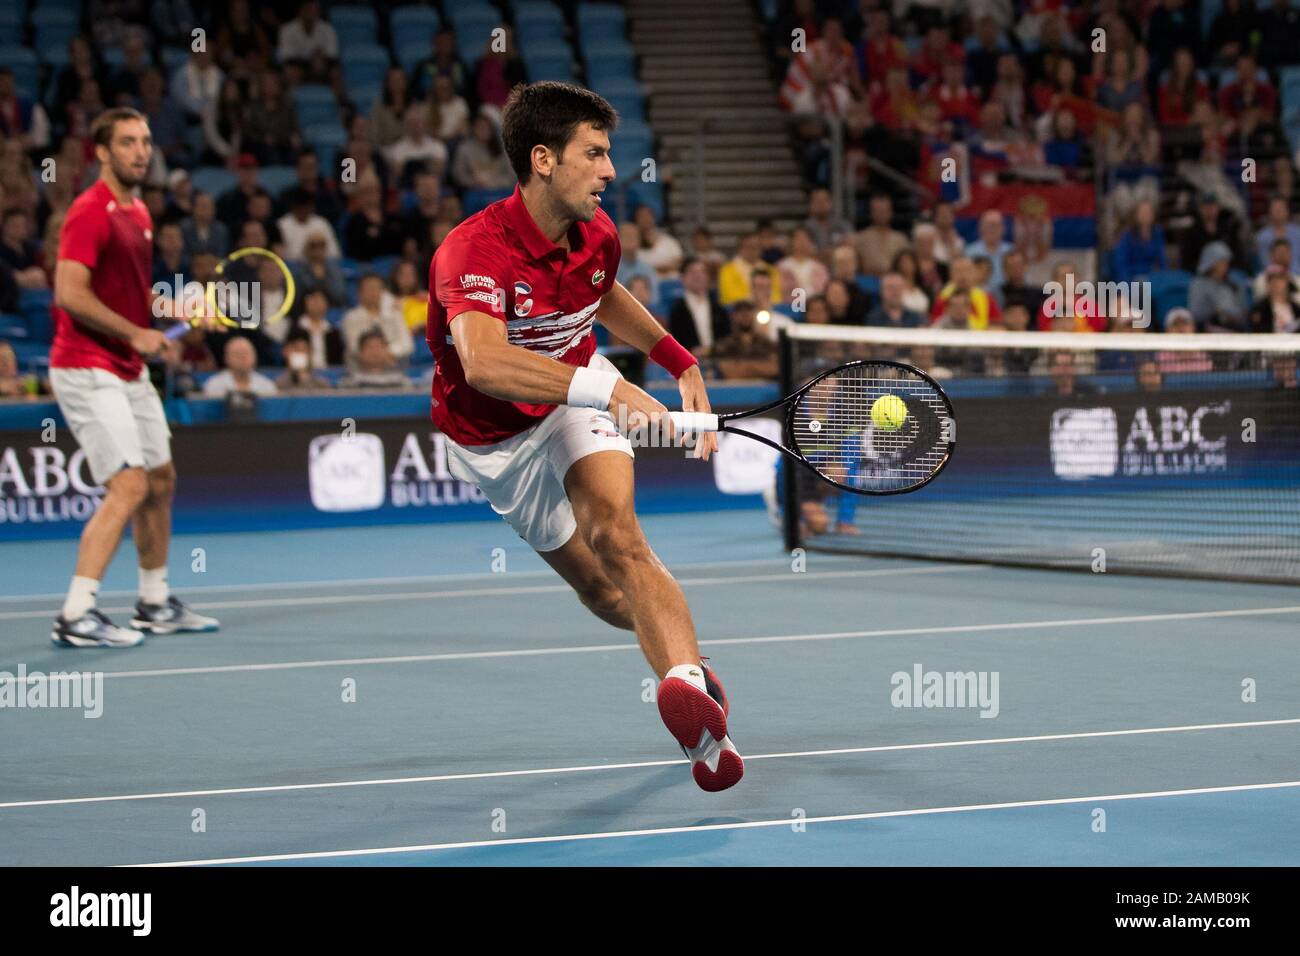 Novak Djokovic de Serbie joue un coup de feu dans les doubles lors de la finale de la coupe ATP 2020 à la Ken Rosewall Arena, Sydney, Australie, le 12 janvier 2020. Photo De Peter Dovgan. Banque D'Images